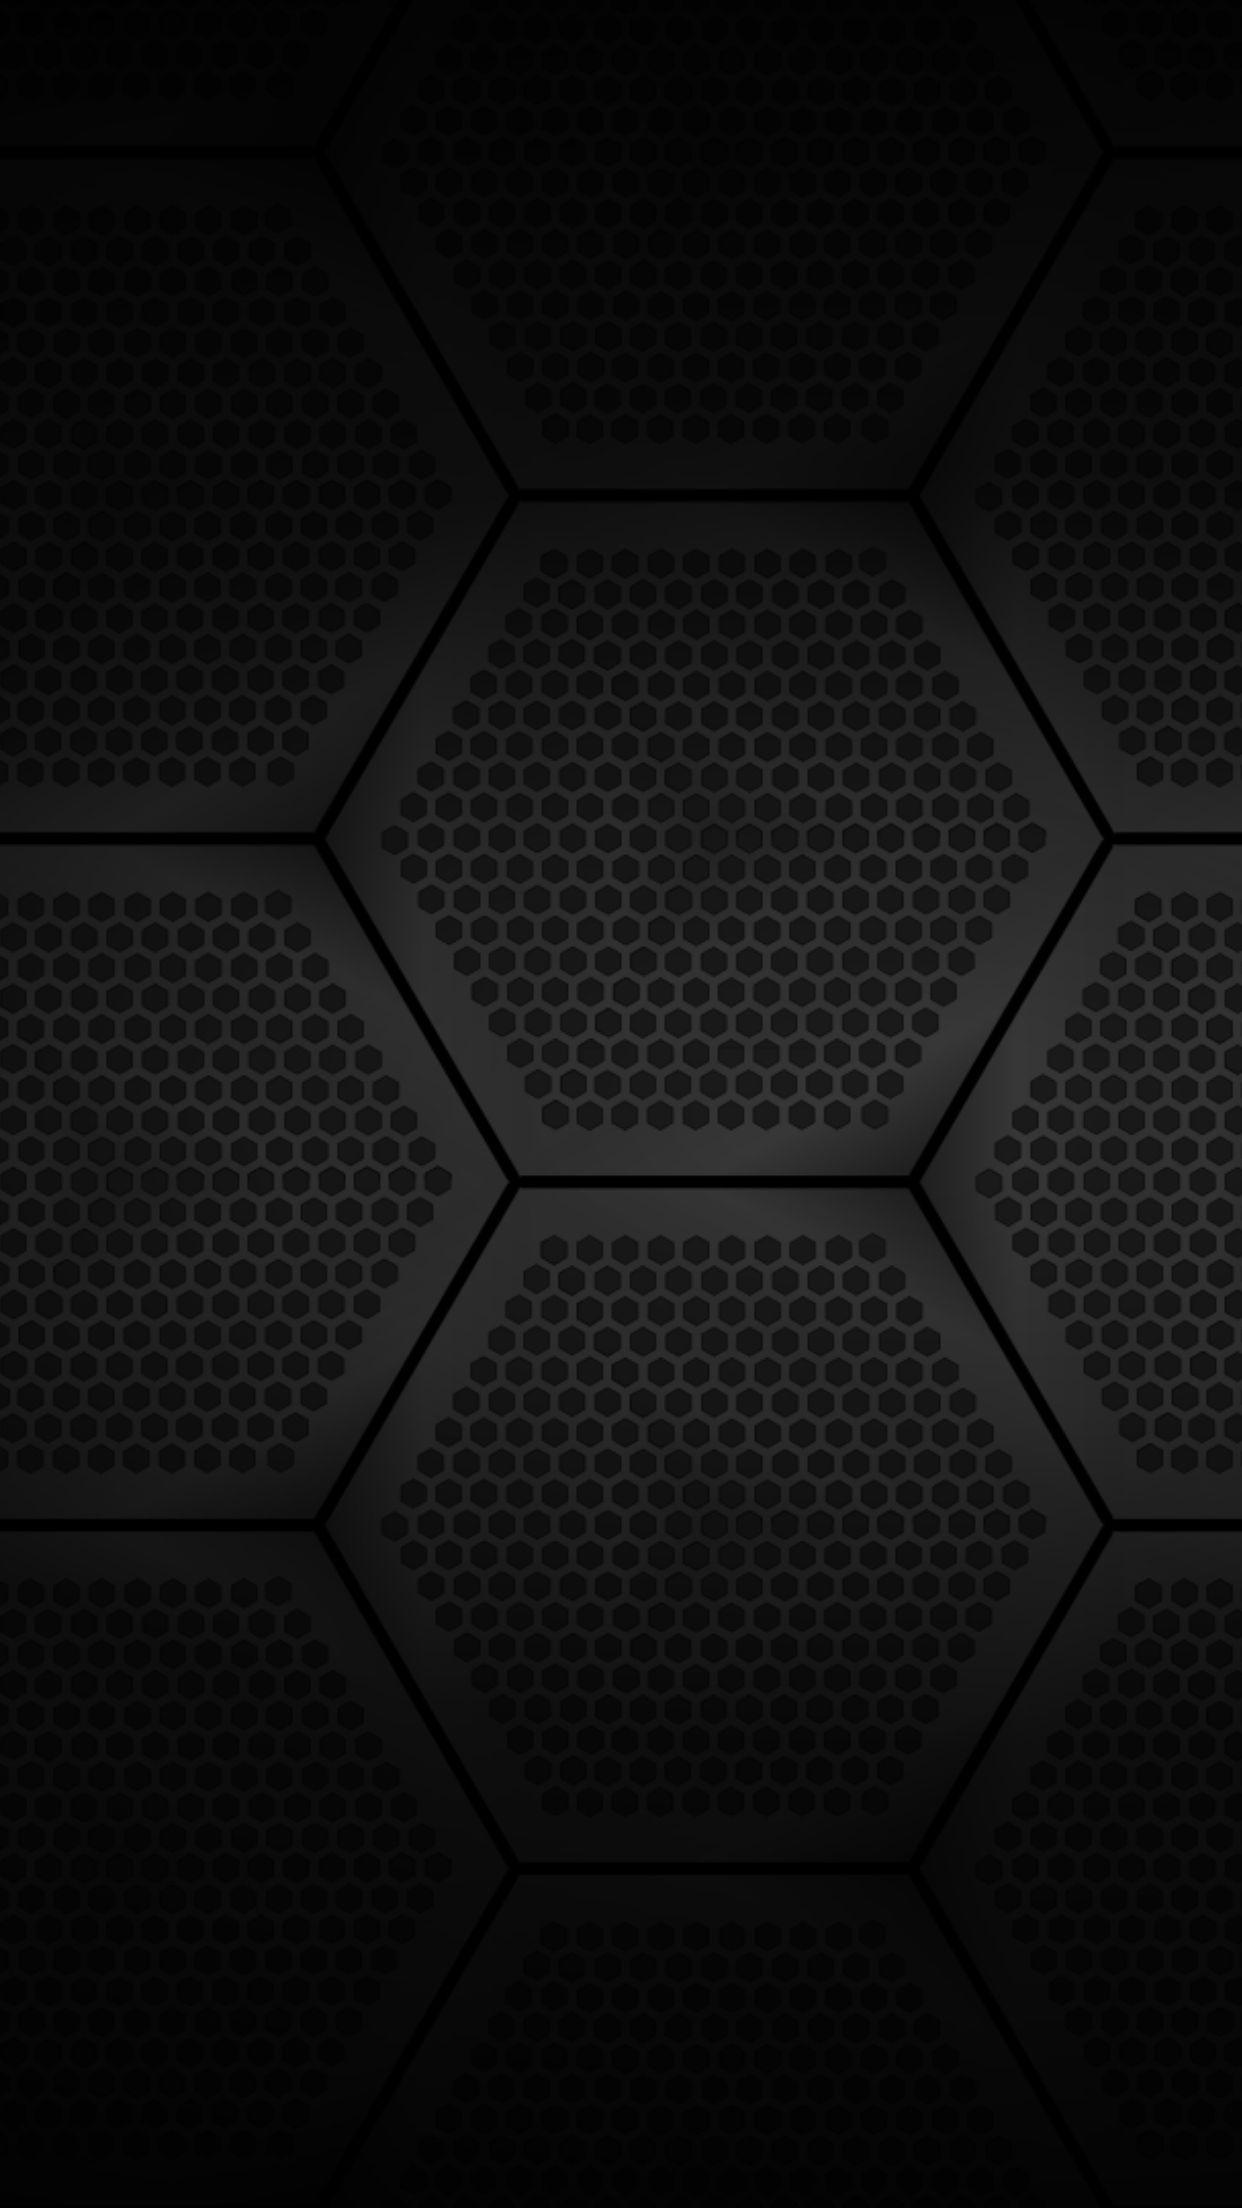 iPhone wallpaper. Hexagon wallpaper, Technology wallpaper